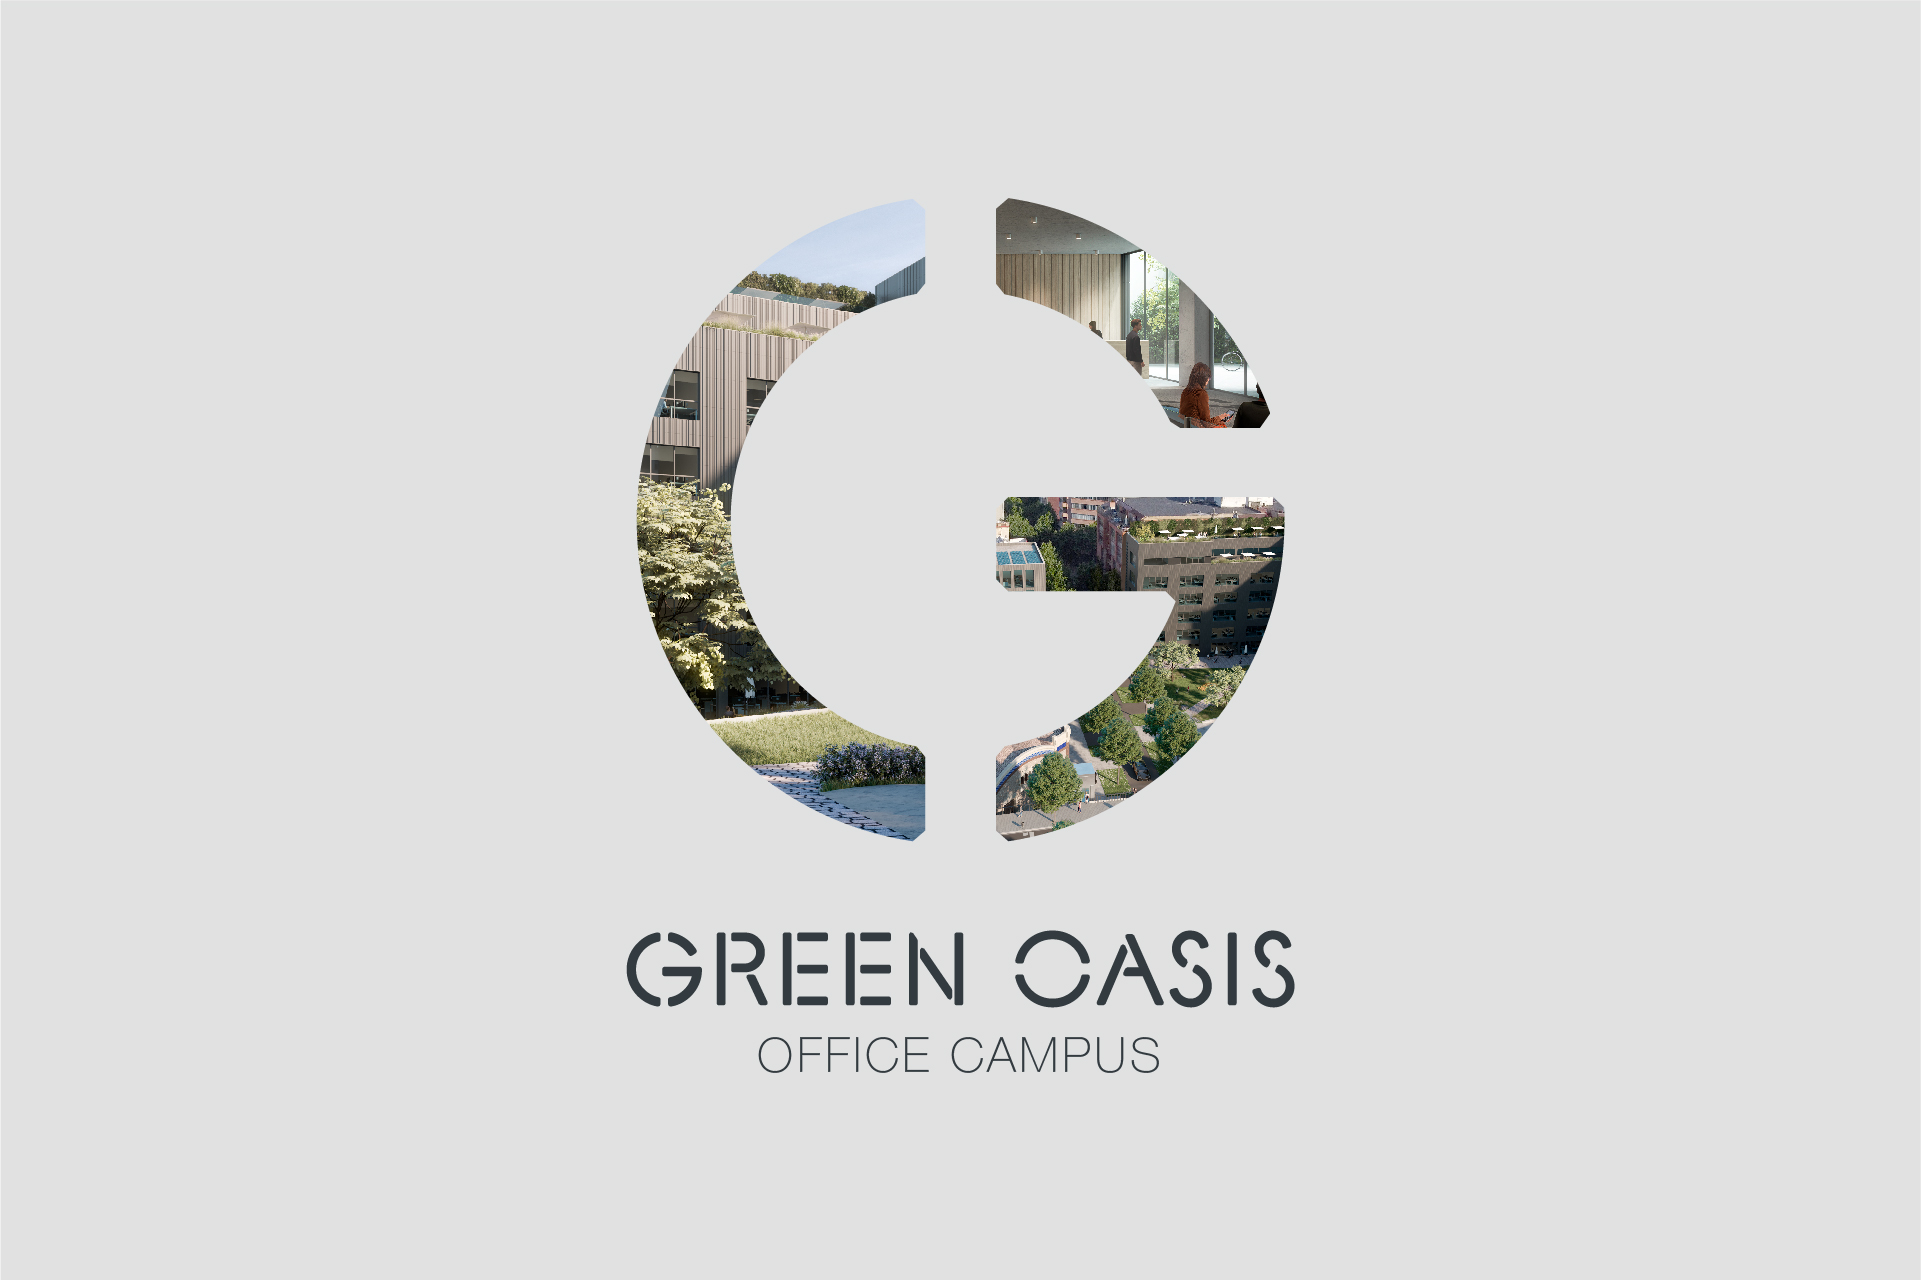 Edificio Z Green Oasis: el próximo proyecto más emblemático de Glenwell en el distrito barcelonés del 22@